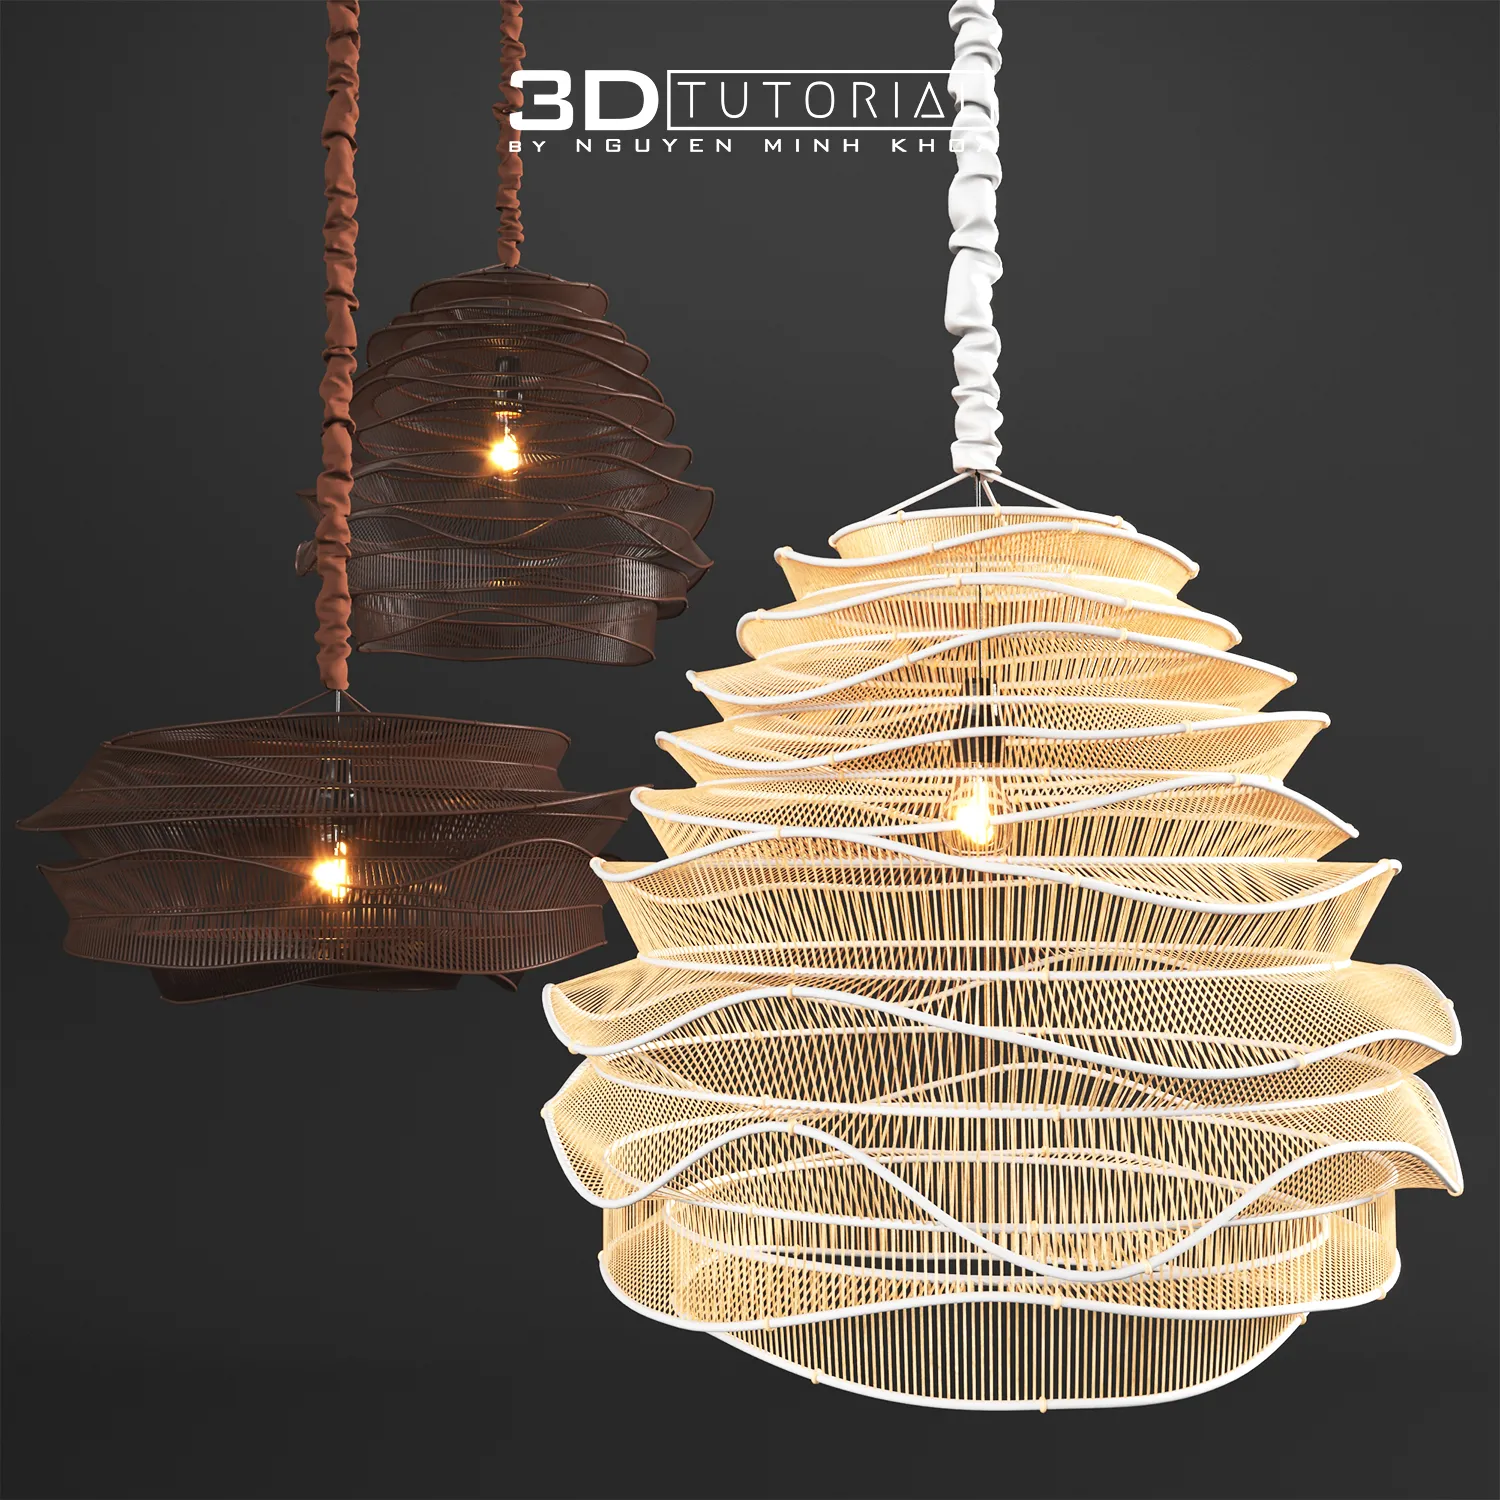 FURNITURE 3D MODELS – Roost bamboo cloud chandeliers modelbyNguyenMinhKhoa